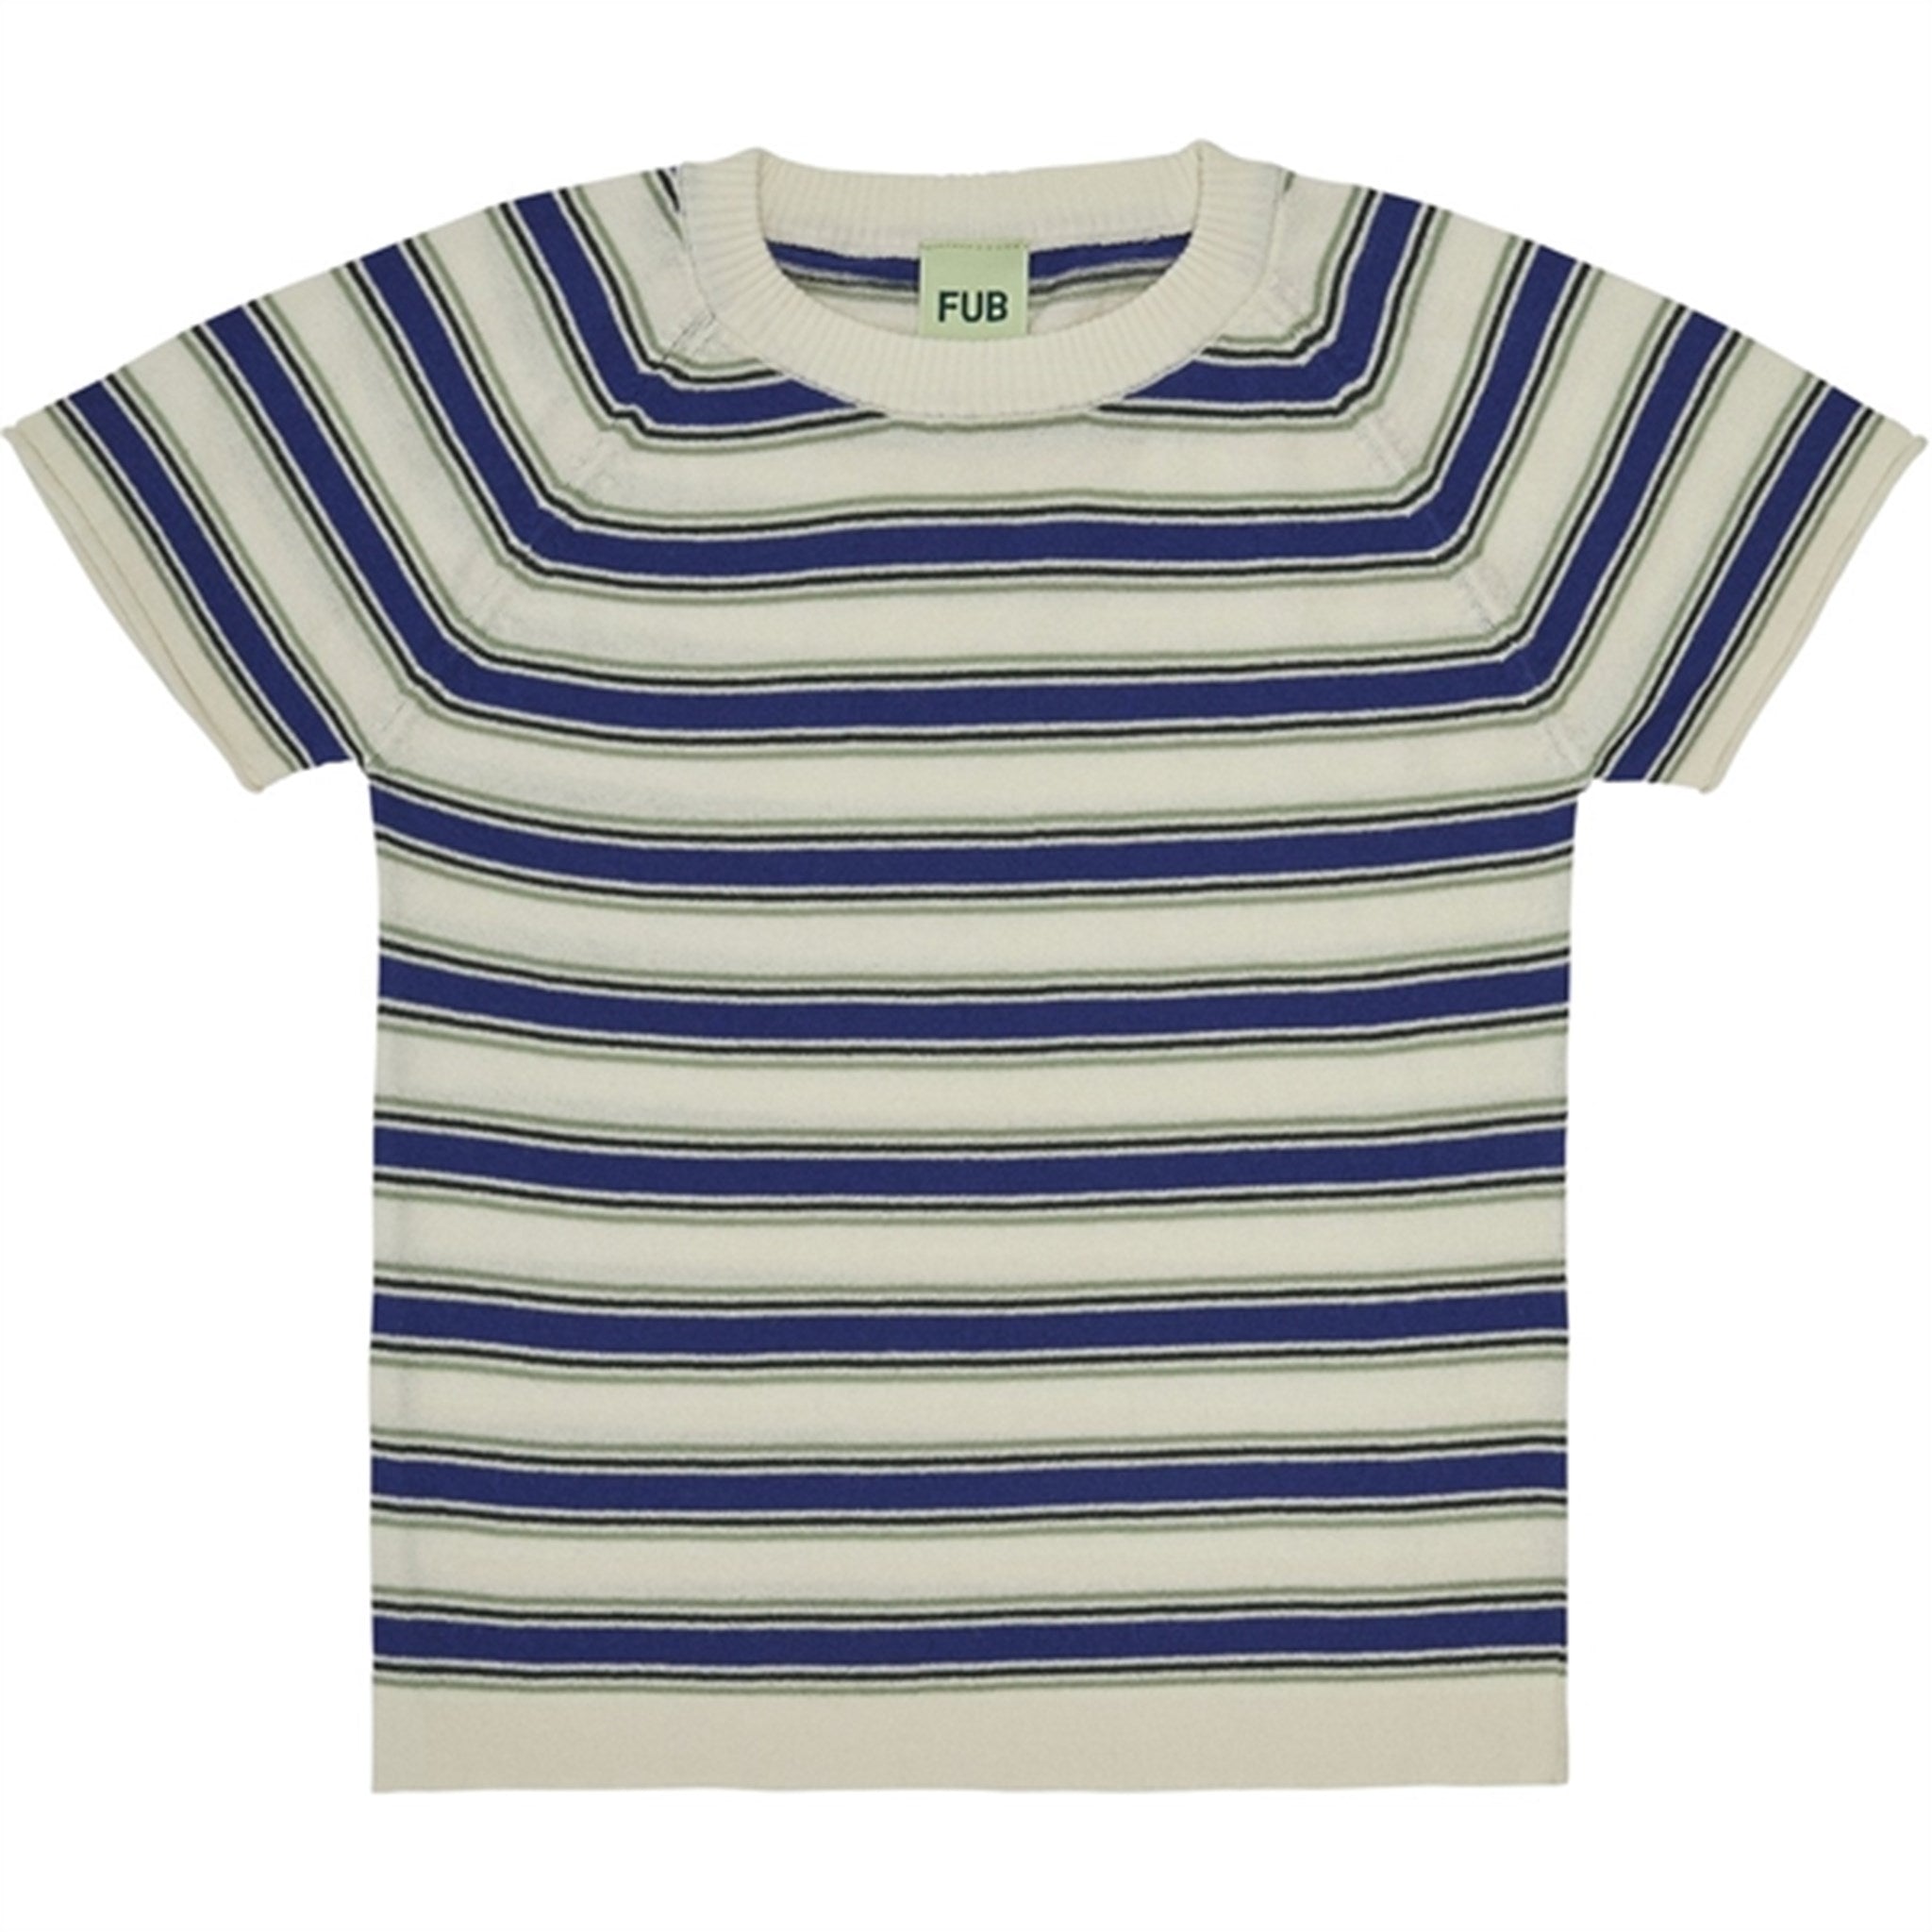 FUB Multi Striped T-Shirt Ecru/Cobolt